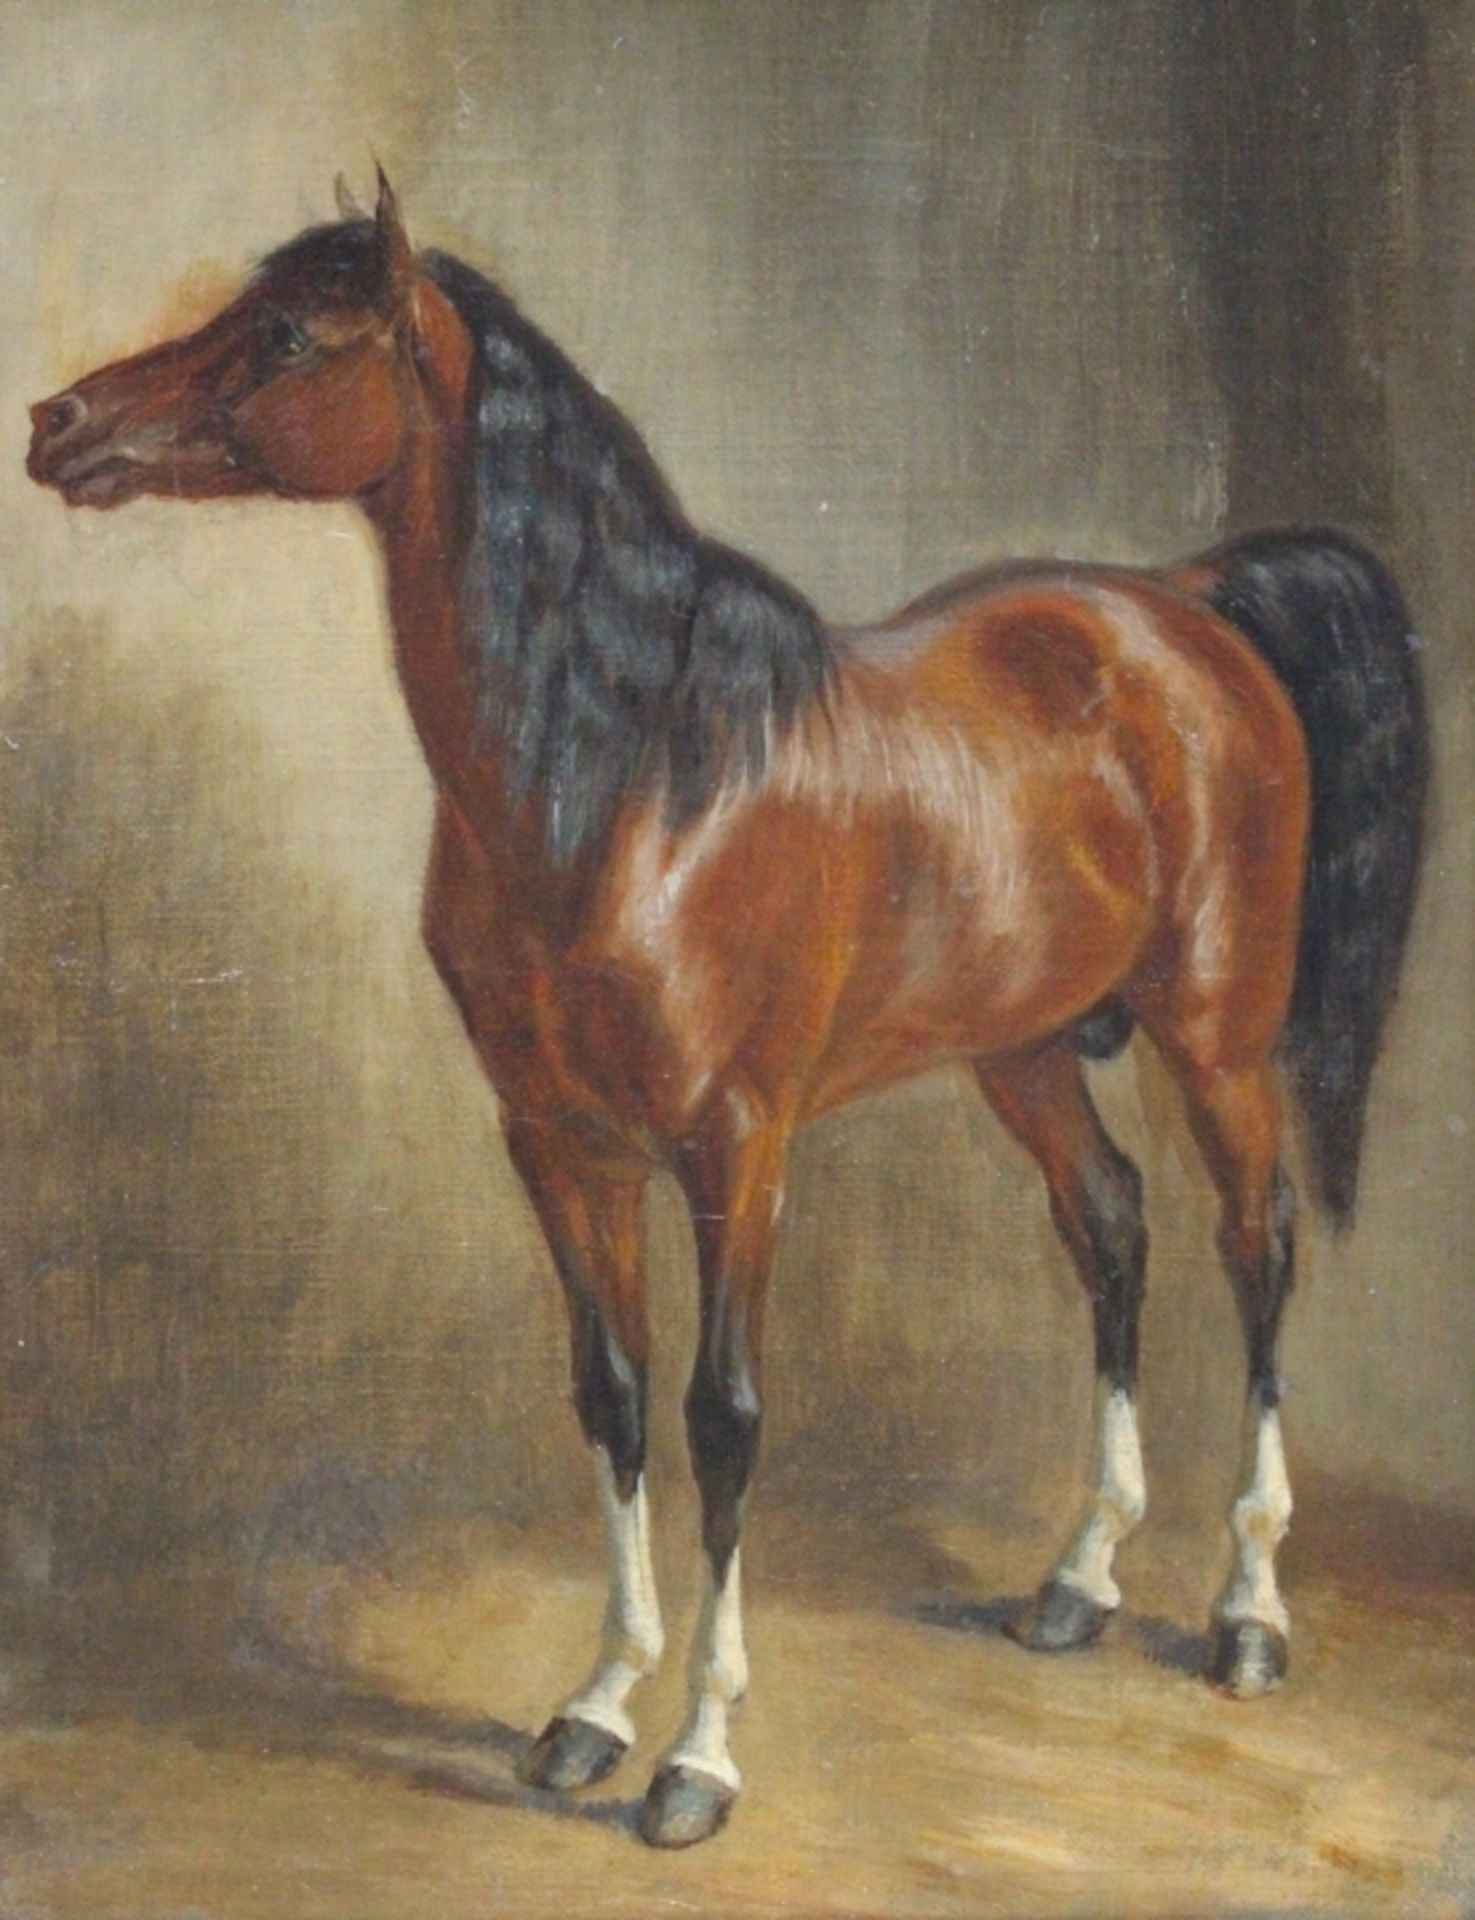 Gemälde - Pferdemaler des 19. Jahrhunderts "Stehendes braunes Pferd nach links gewendet", anonymer